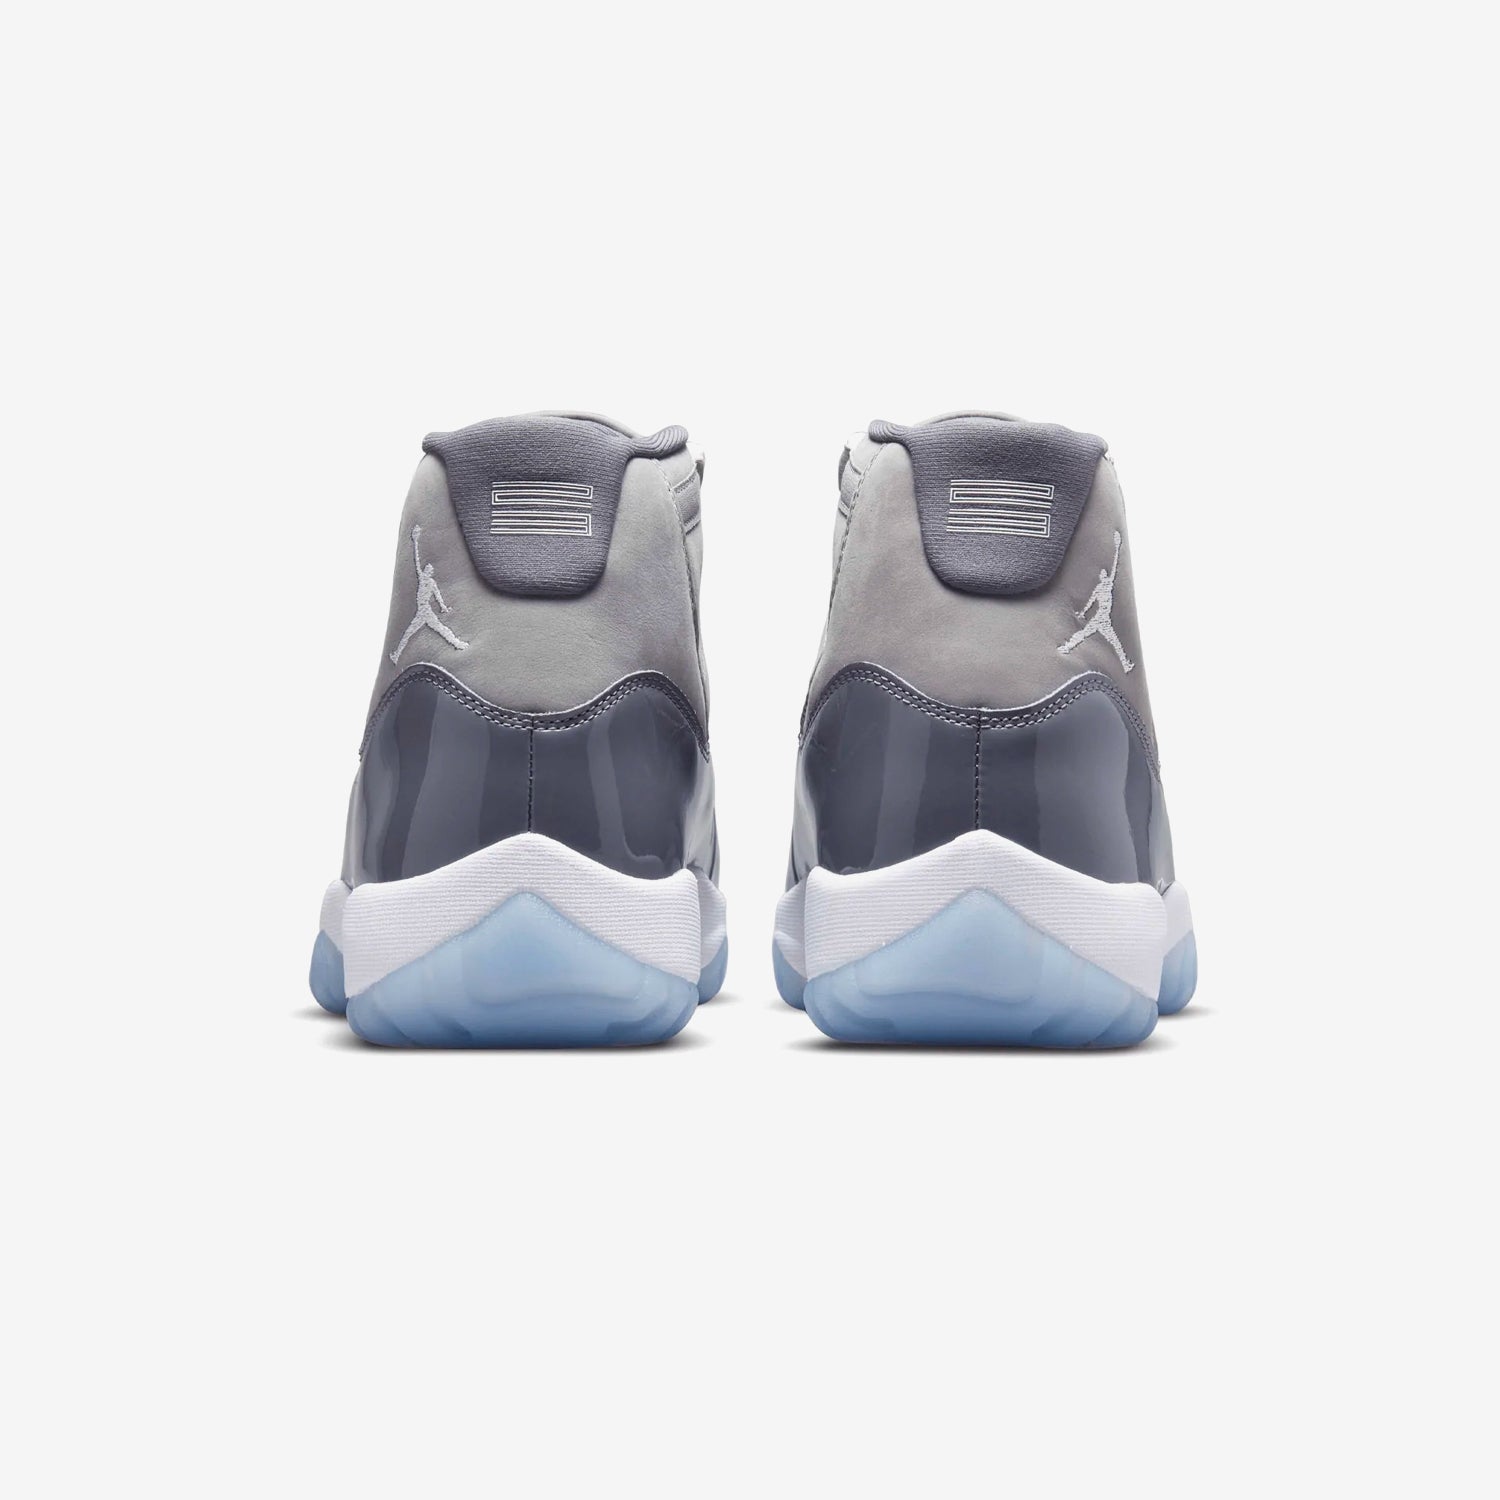 Jordan 11 - Cool Grey